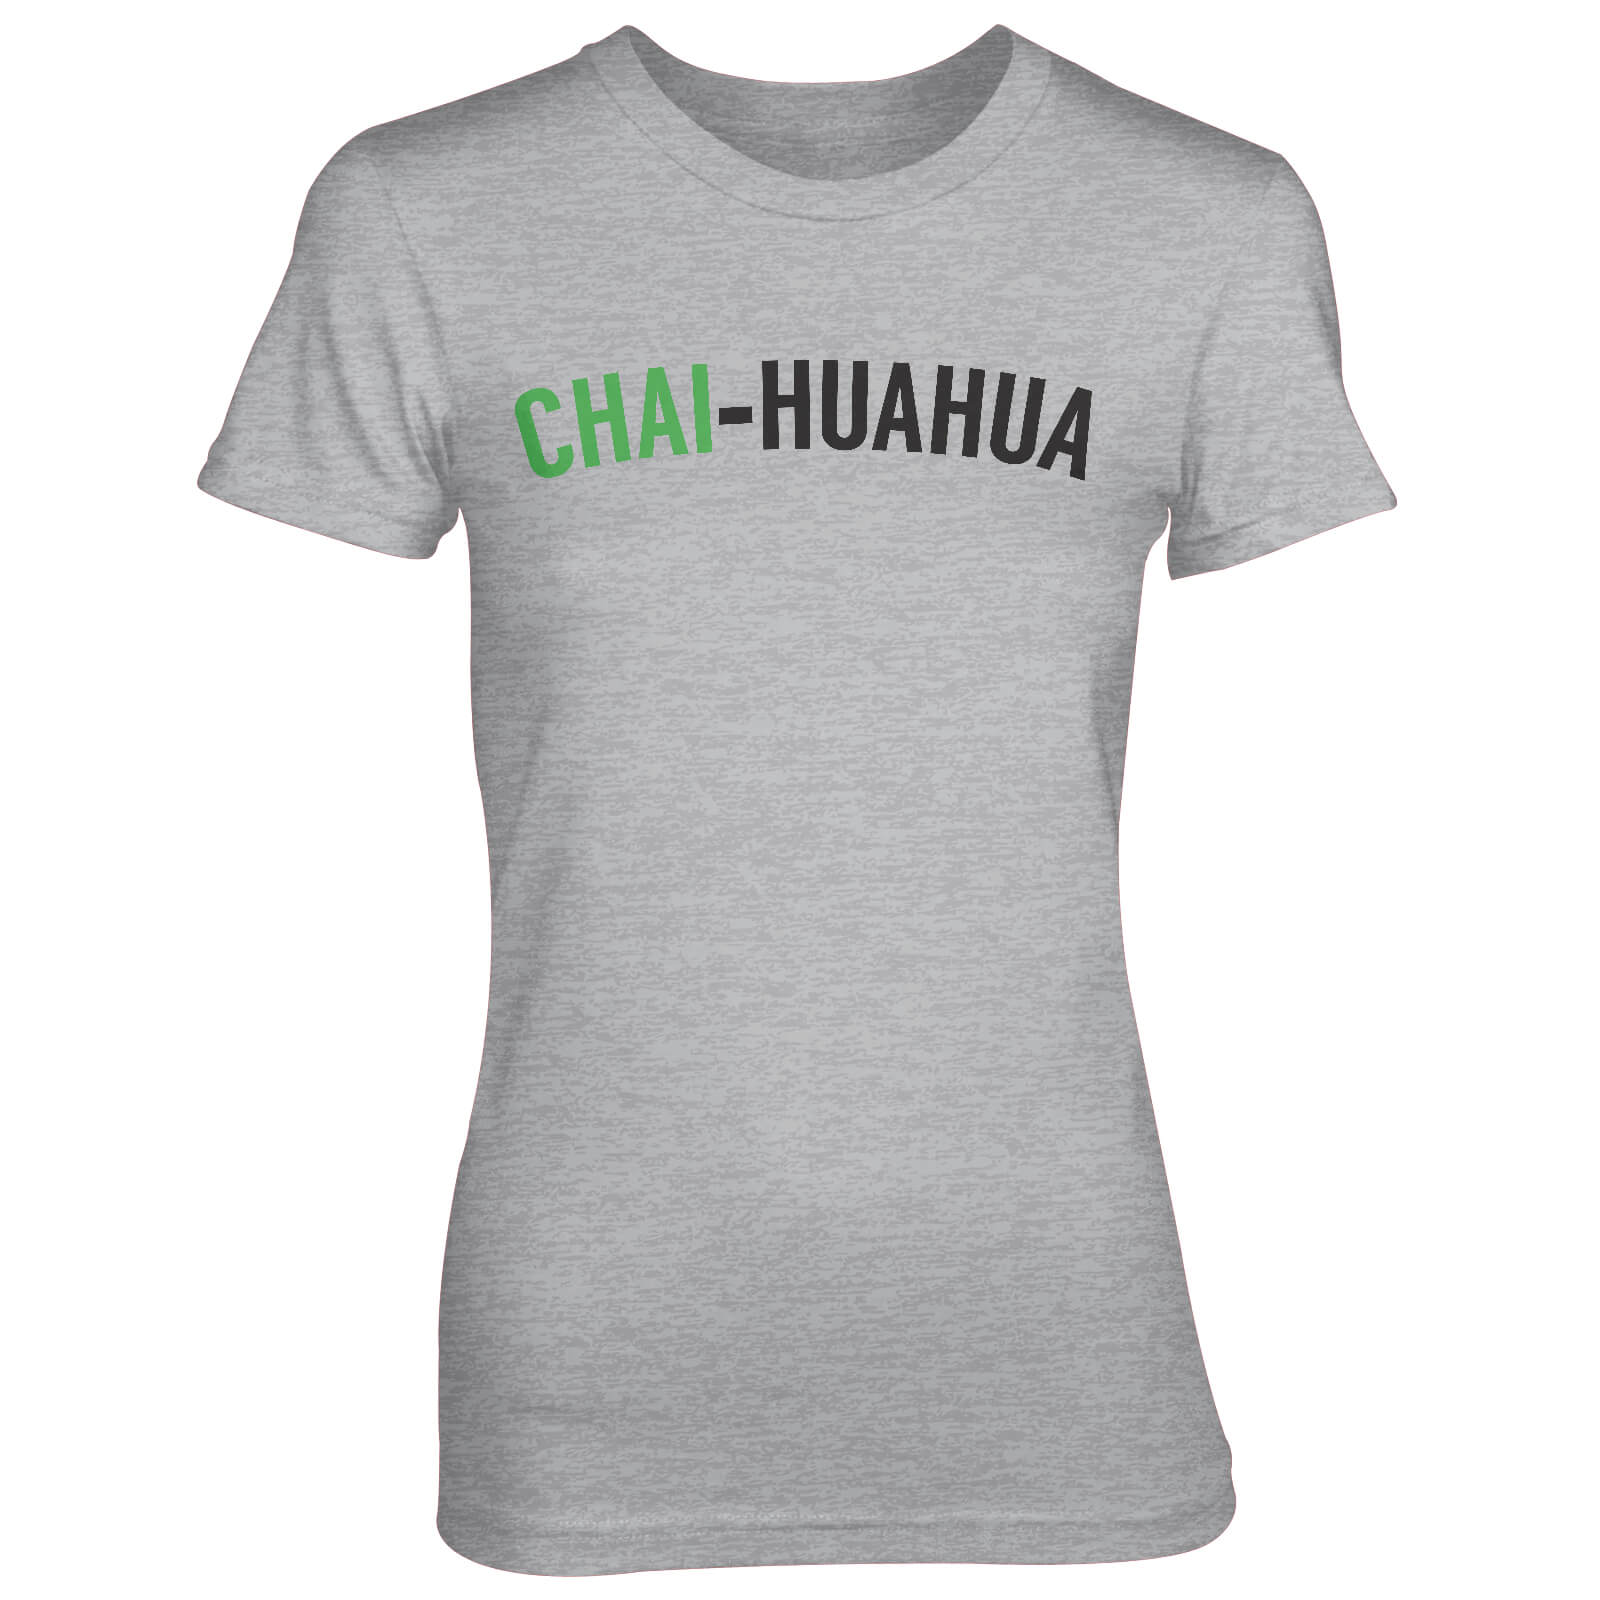 Chai-huahua Women's Grey T-Shirt - S - Grey